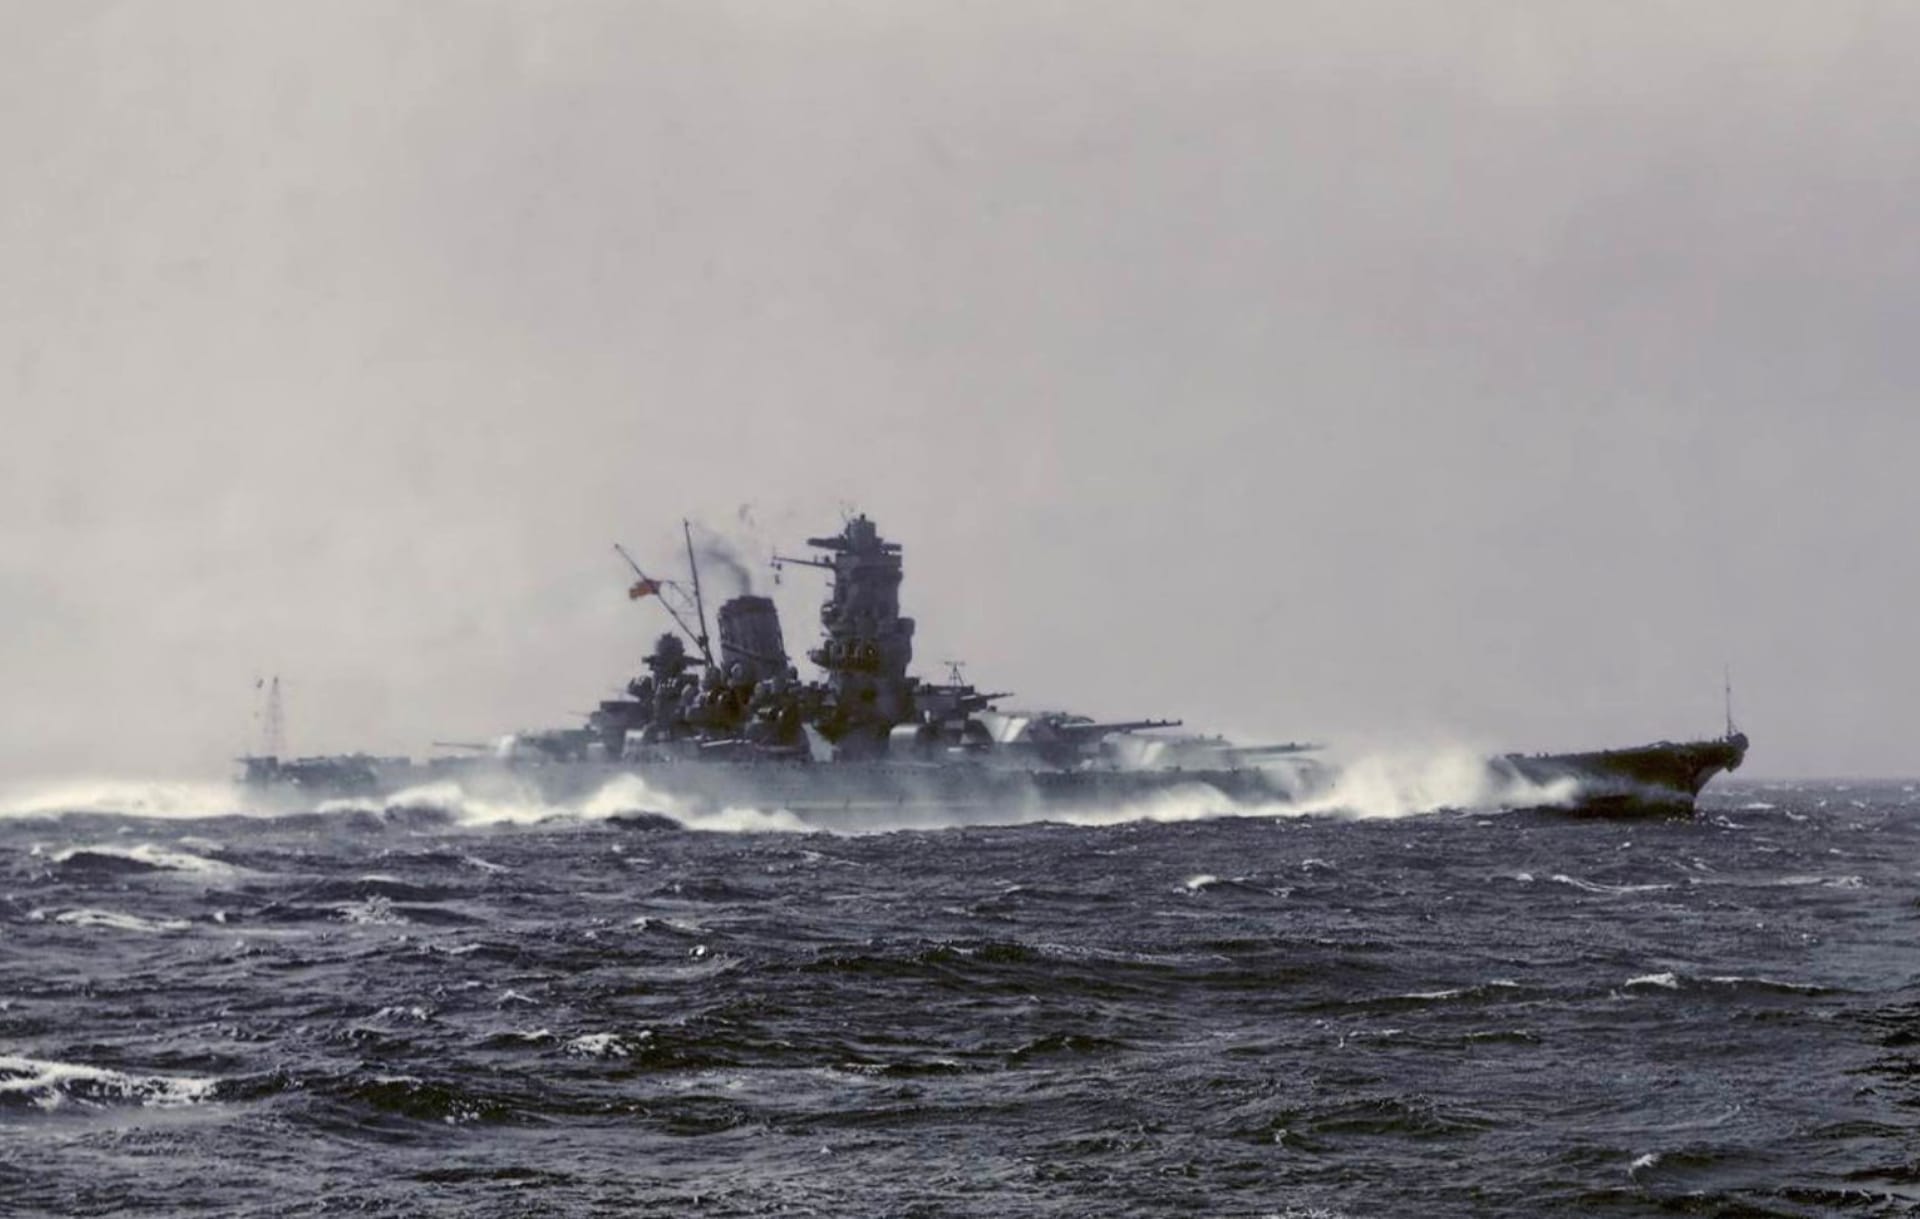 Japanese battleship Yamato at 1024 x 768 size wallpapers HD quality